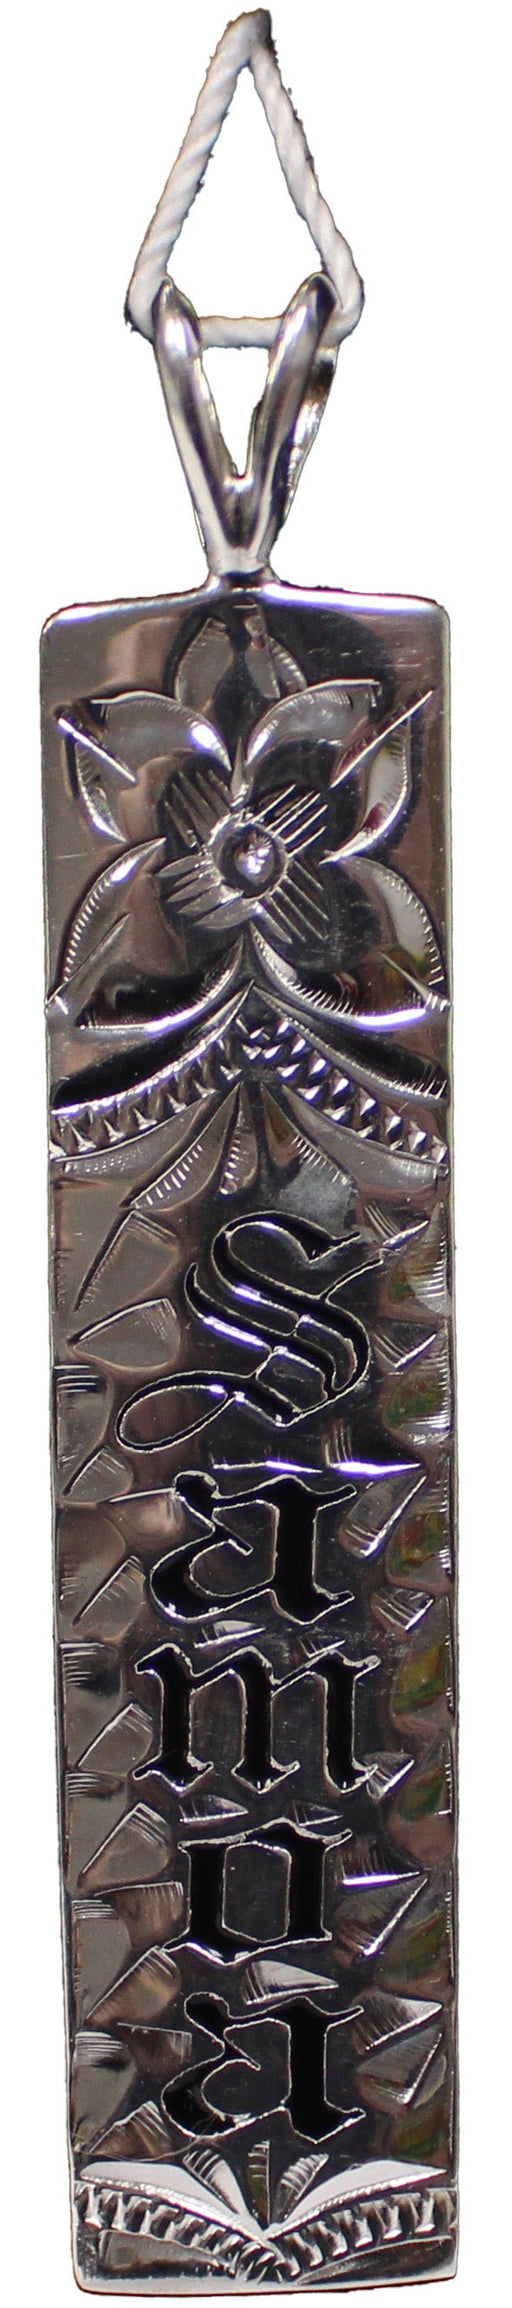 Parra Jewelry Sterling Silver 10mm Samoa Pendant, Black Enamel